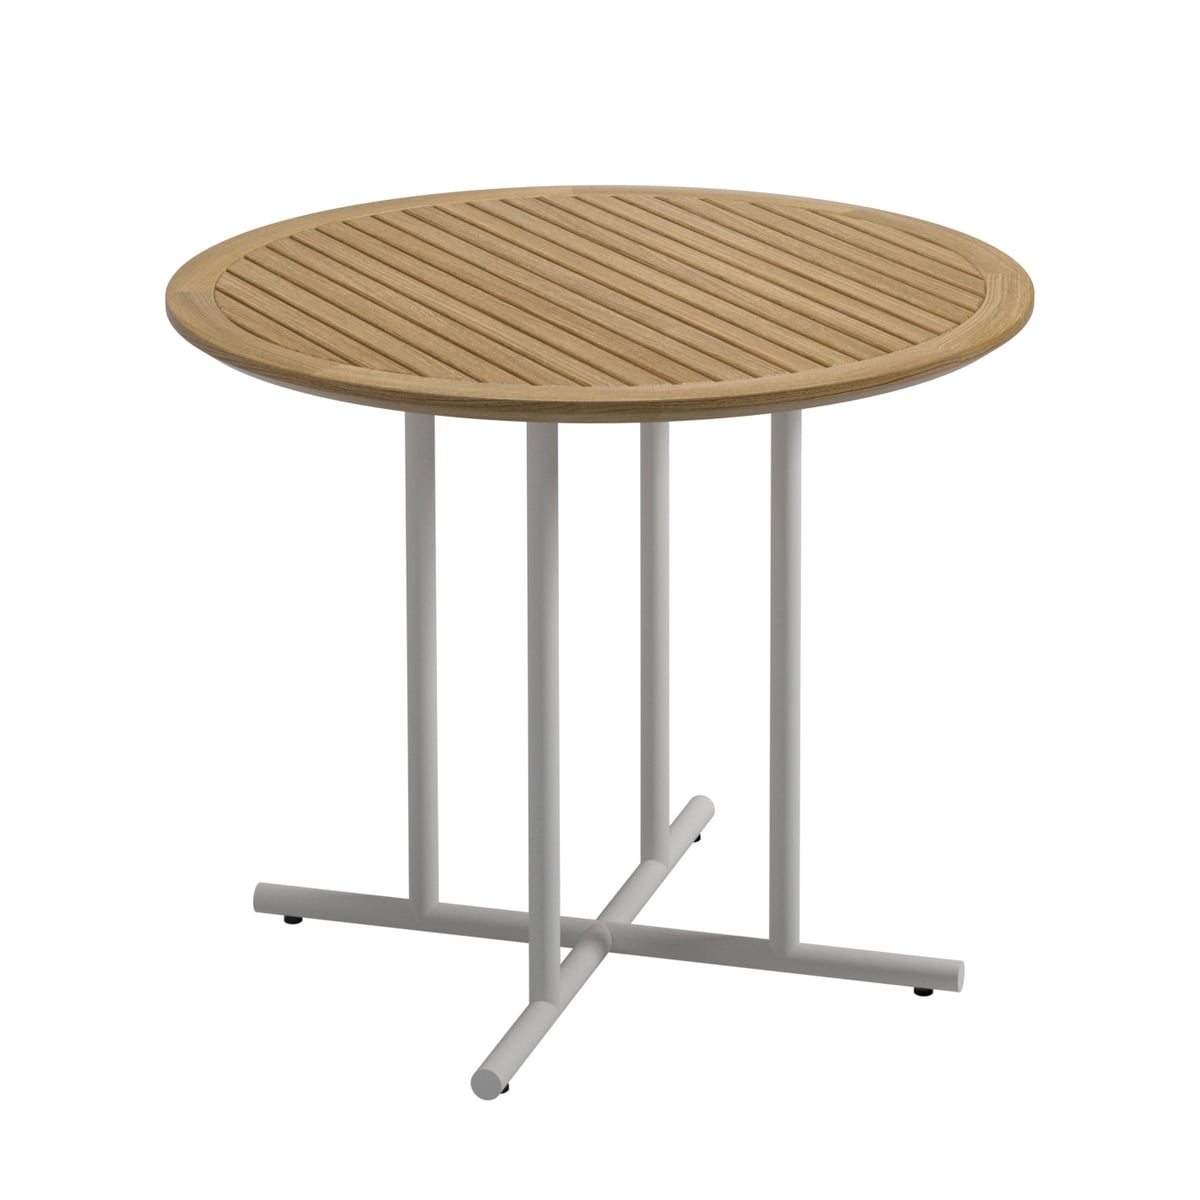 Gloster - Whirl Tisch, Ø 90 x H 74 cm, Teak / weiß